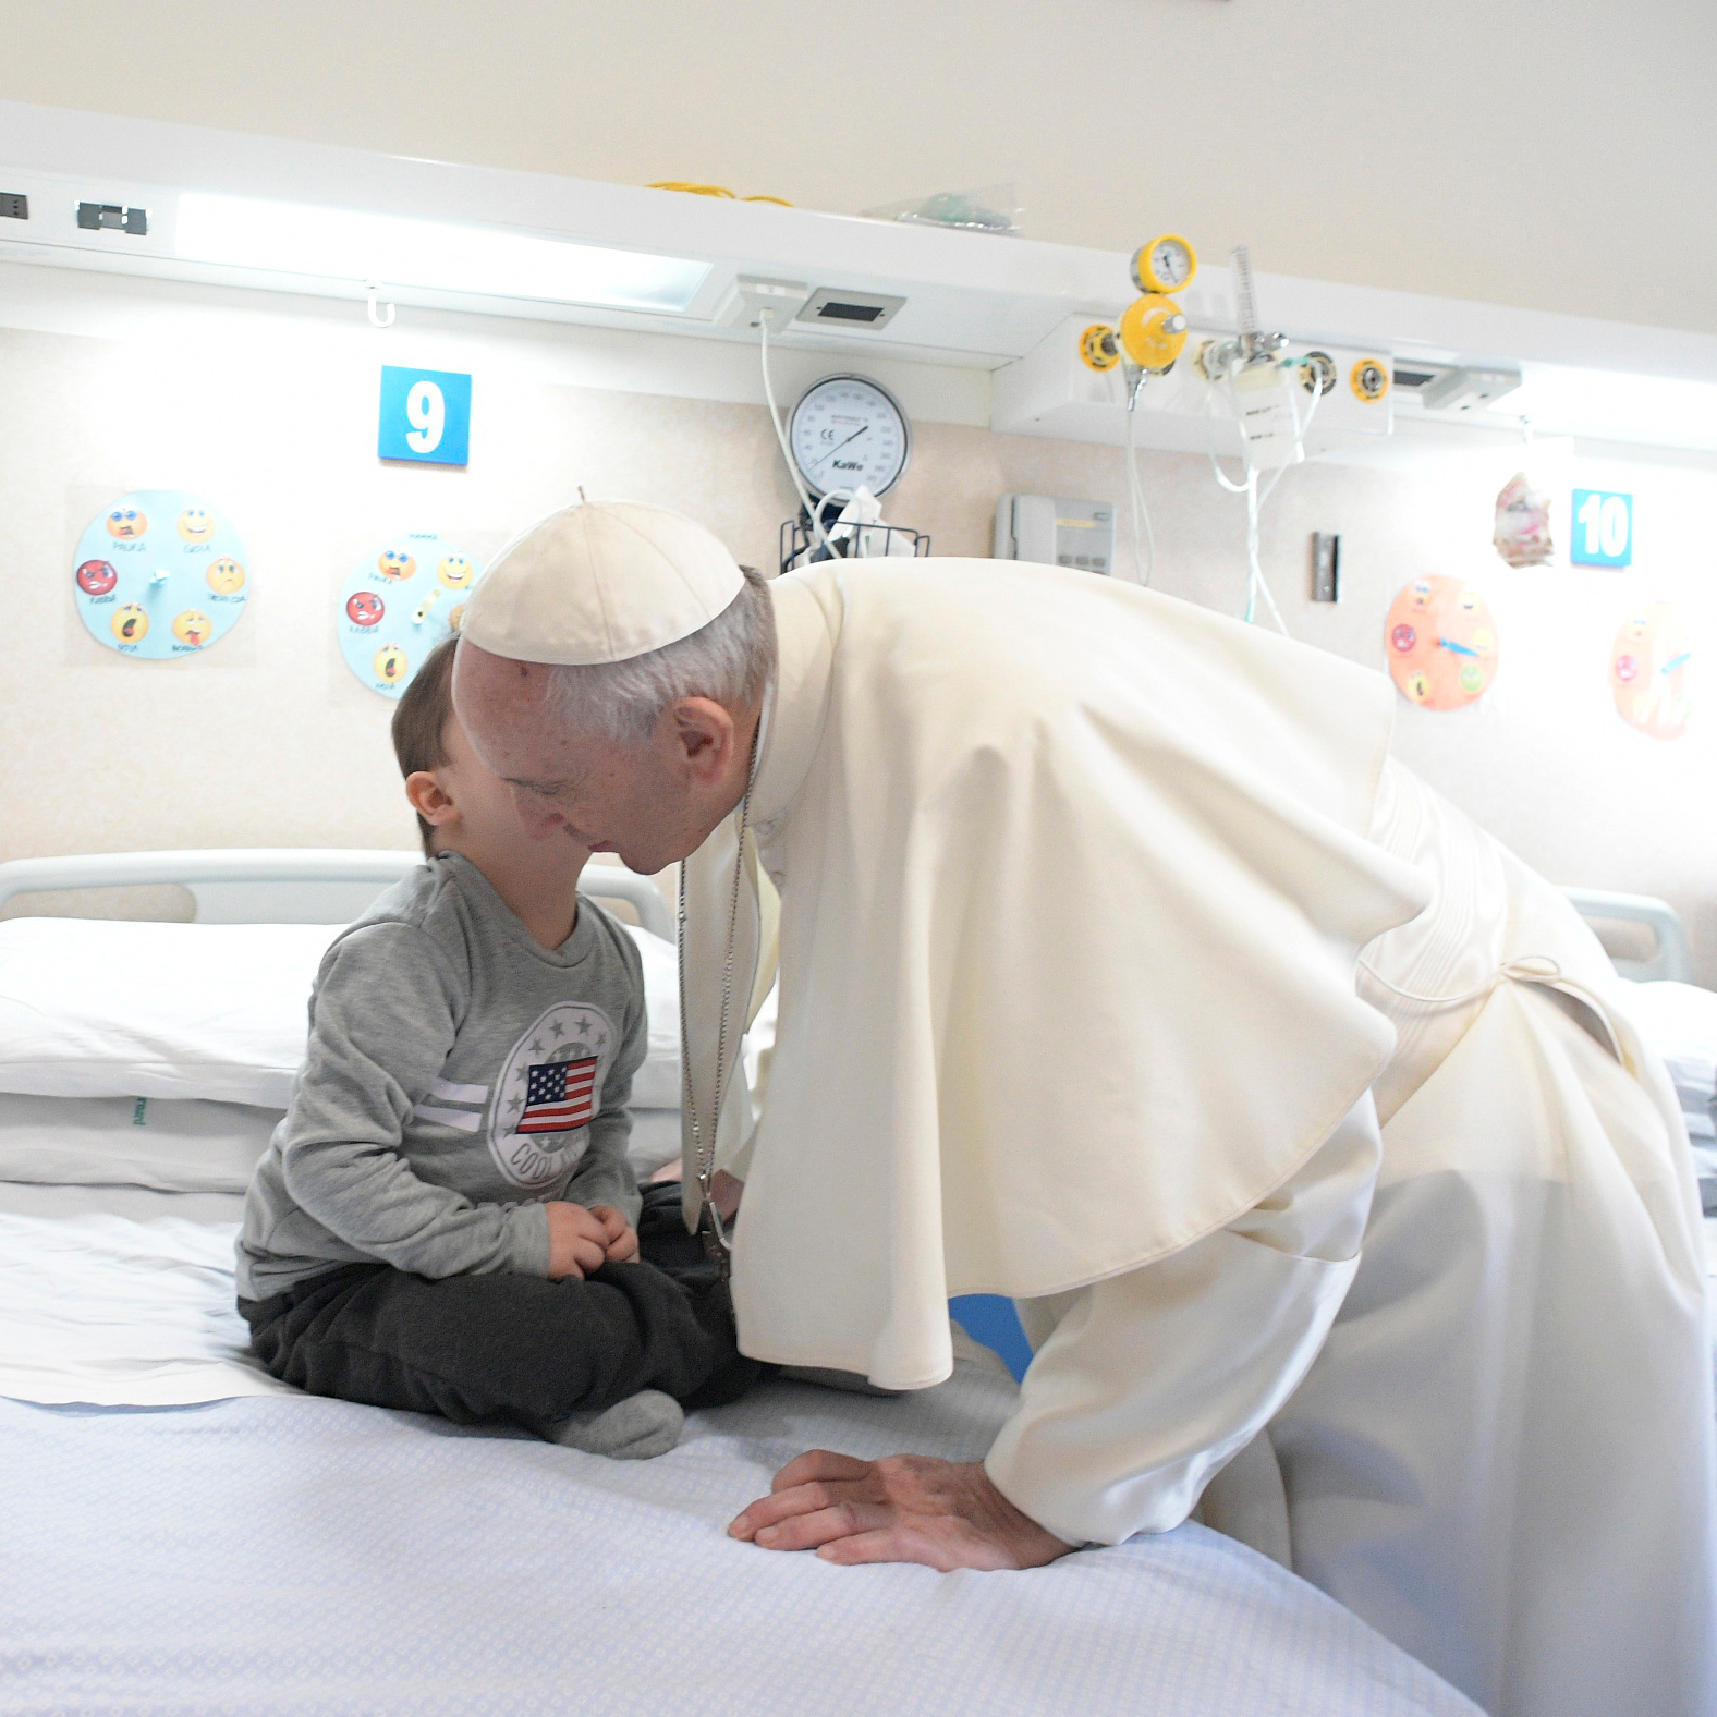 Papa Francisco lamenta crueldad contra niños durante misa en iglesia del padre Pio